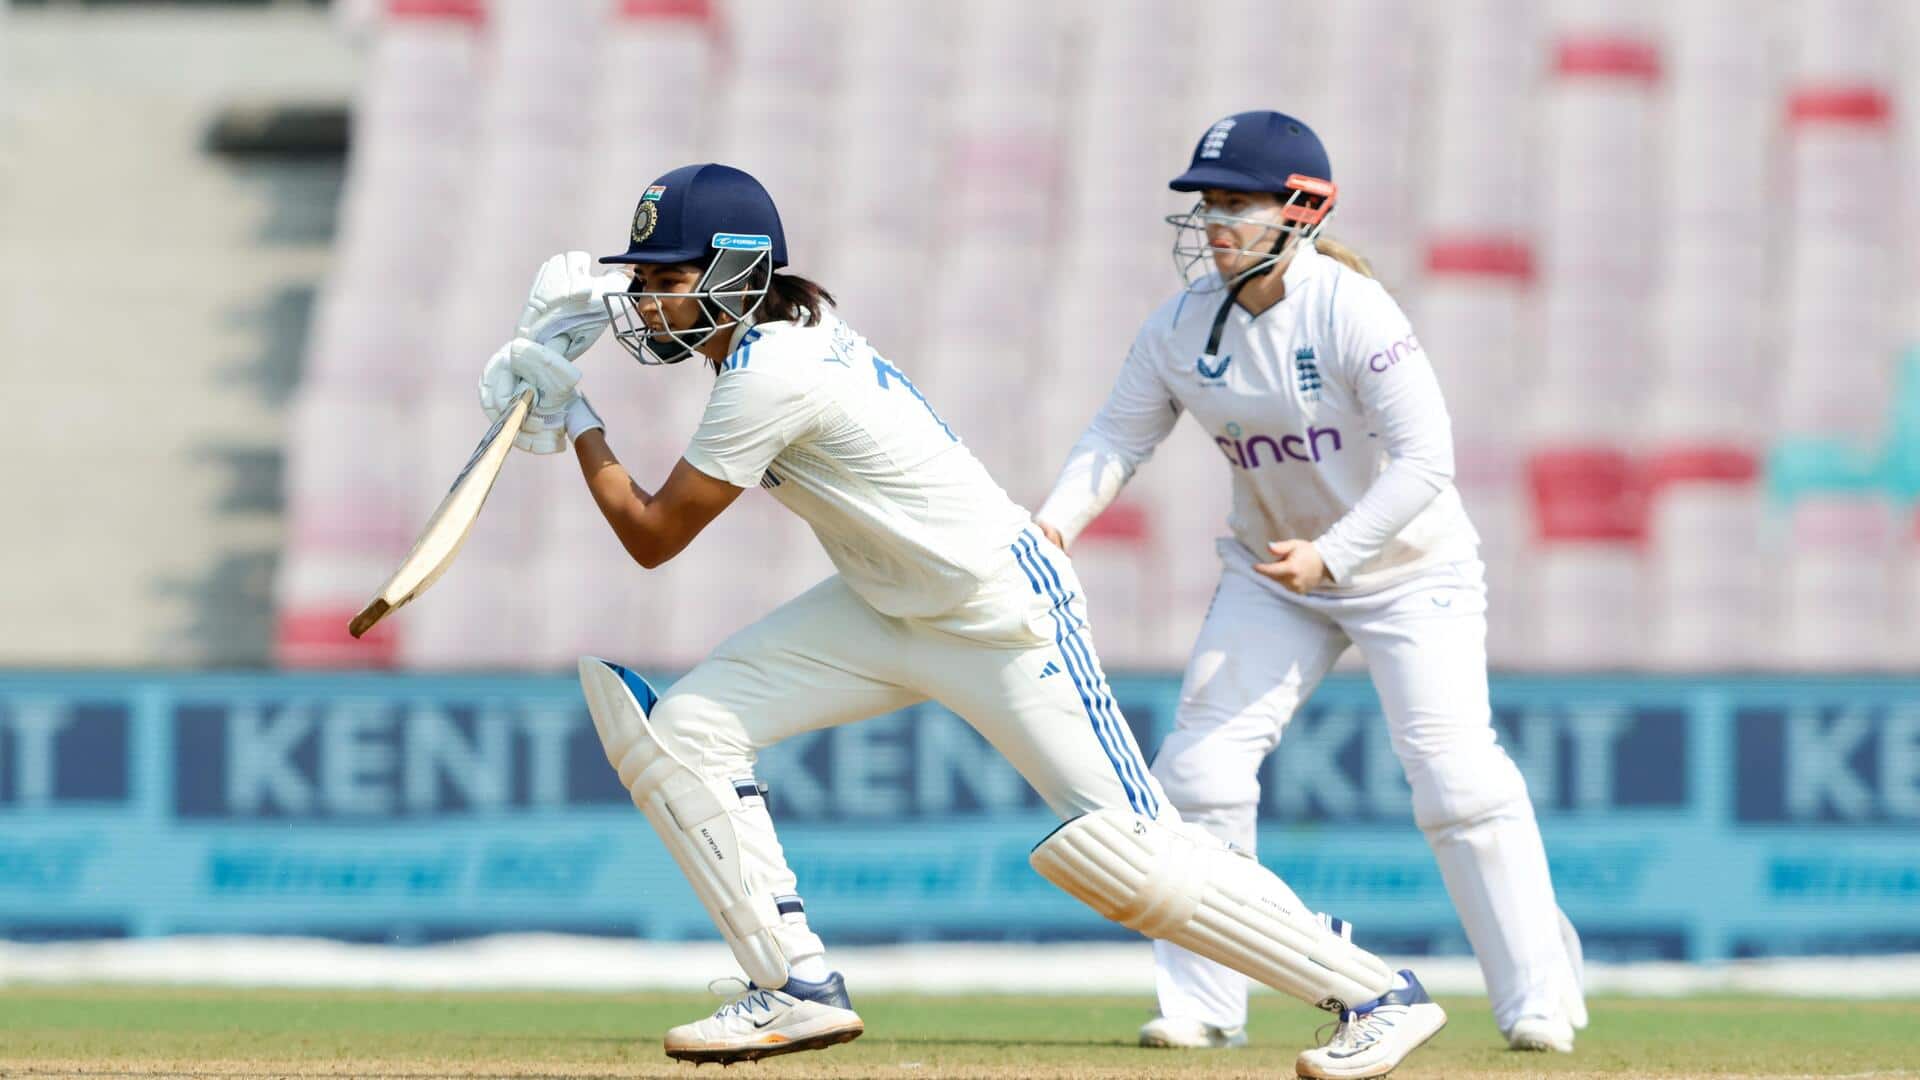 भारत बनाम इंग्लैंड: यास्तिका भाटिया ने खेली अपने टेस्ट करियर की सर्वश्रेष्ठ पारी 